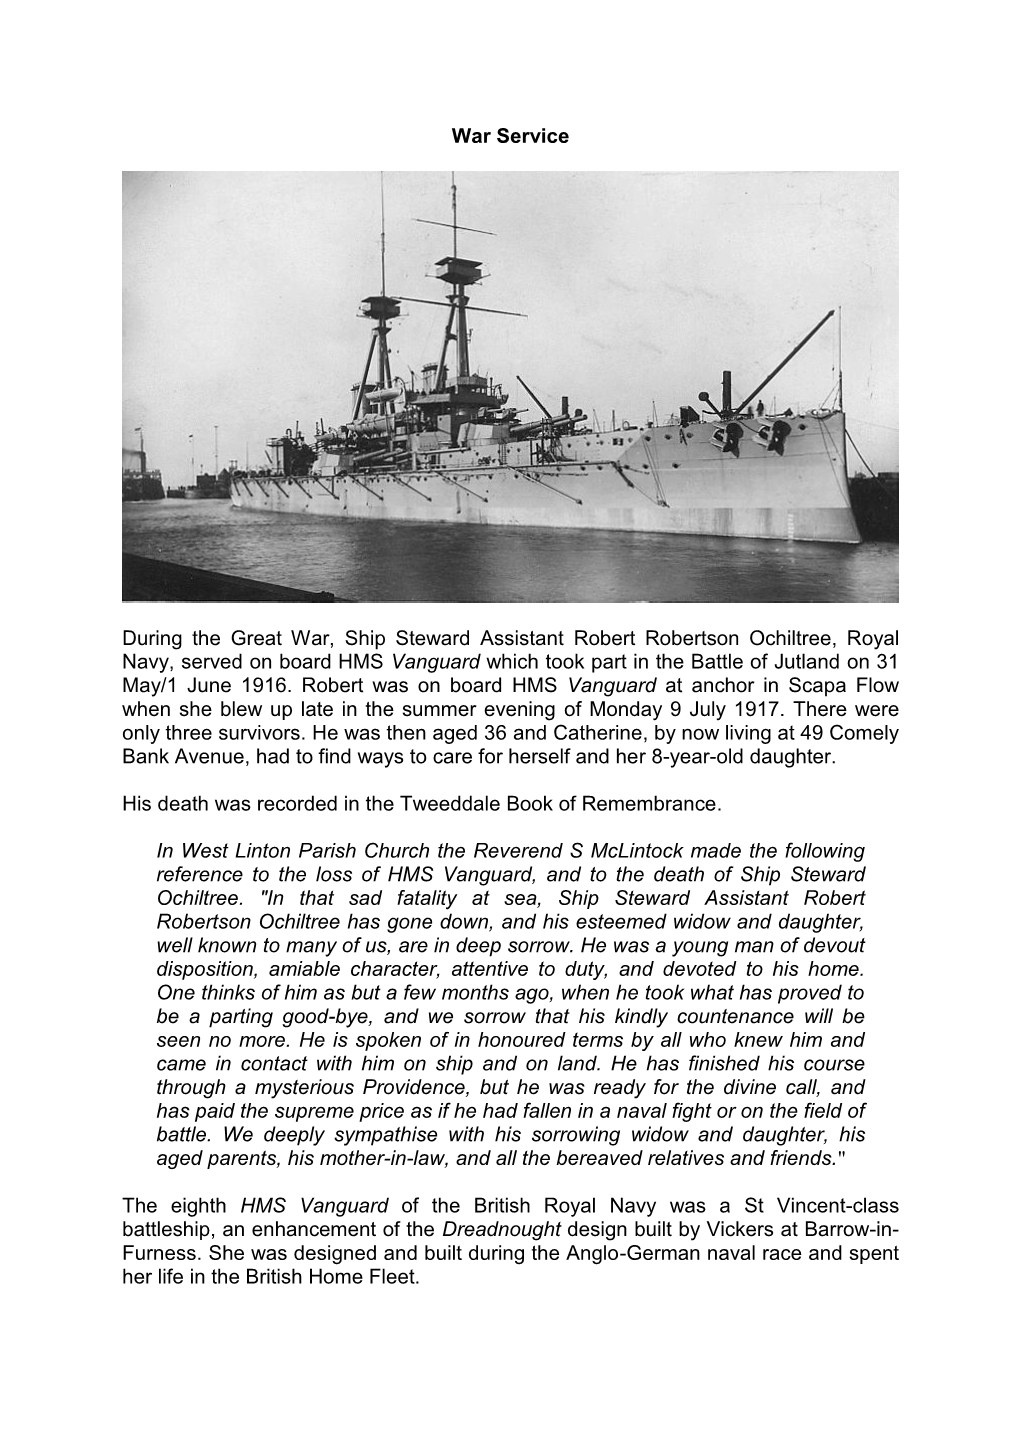 War Service During the Great War, Ship Steward Assistant Robert